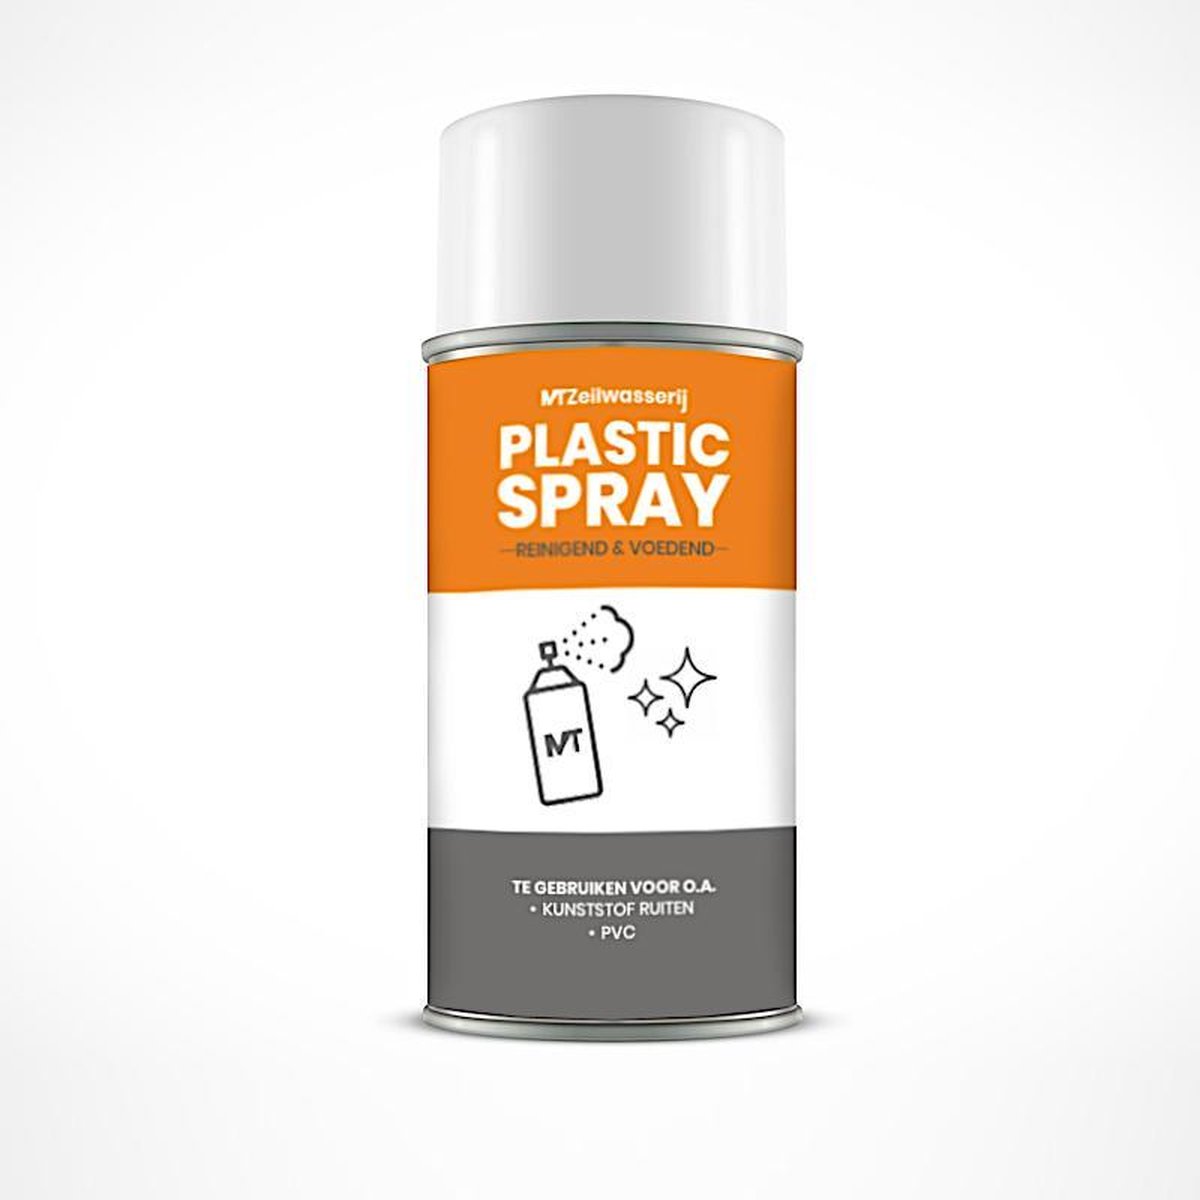 Kunstof reinigen - Plastic Spray - MT Zeilwasserij